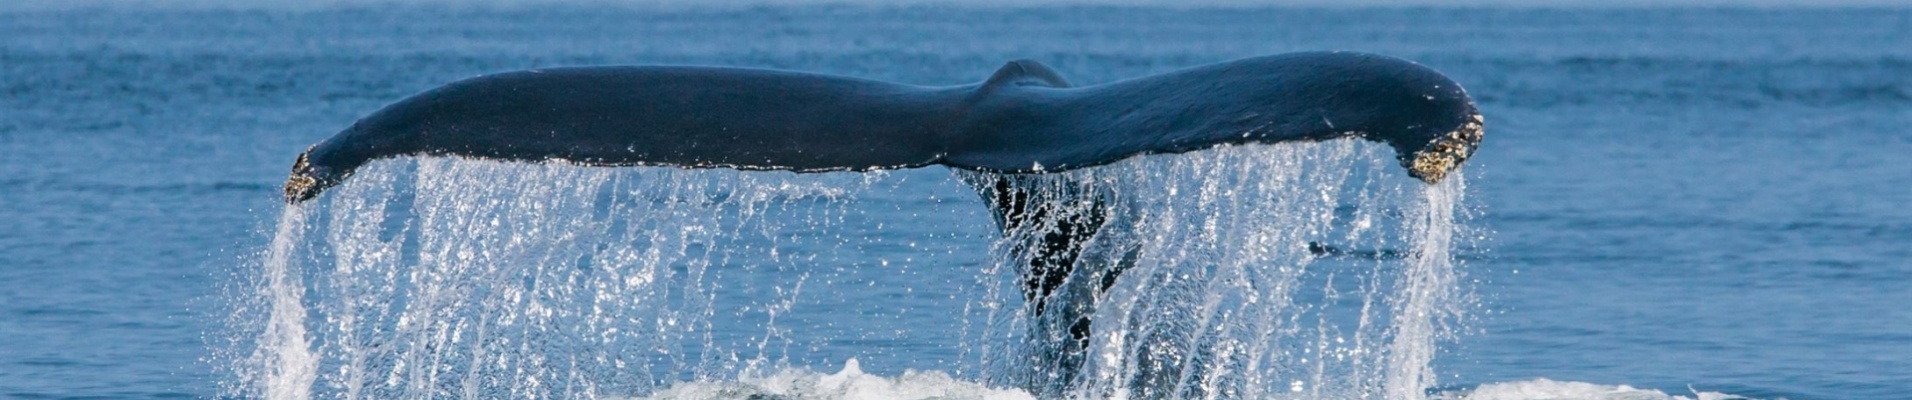 baleine-sautant-fleuve-saint-laurent-quebec